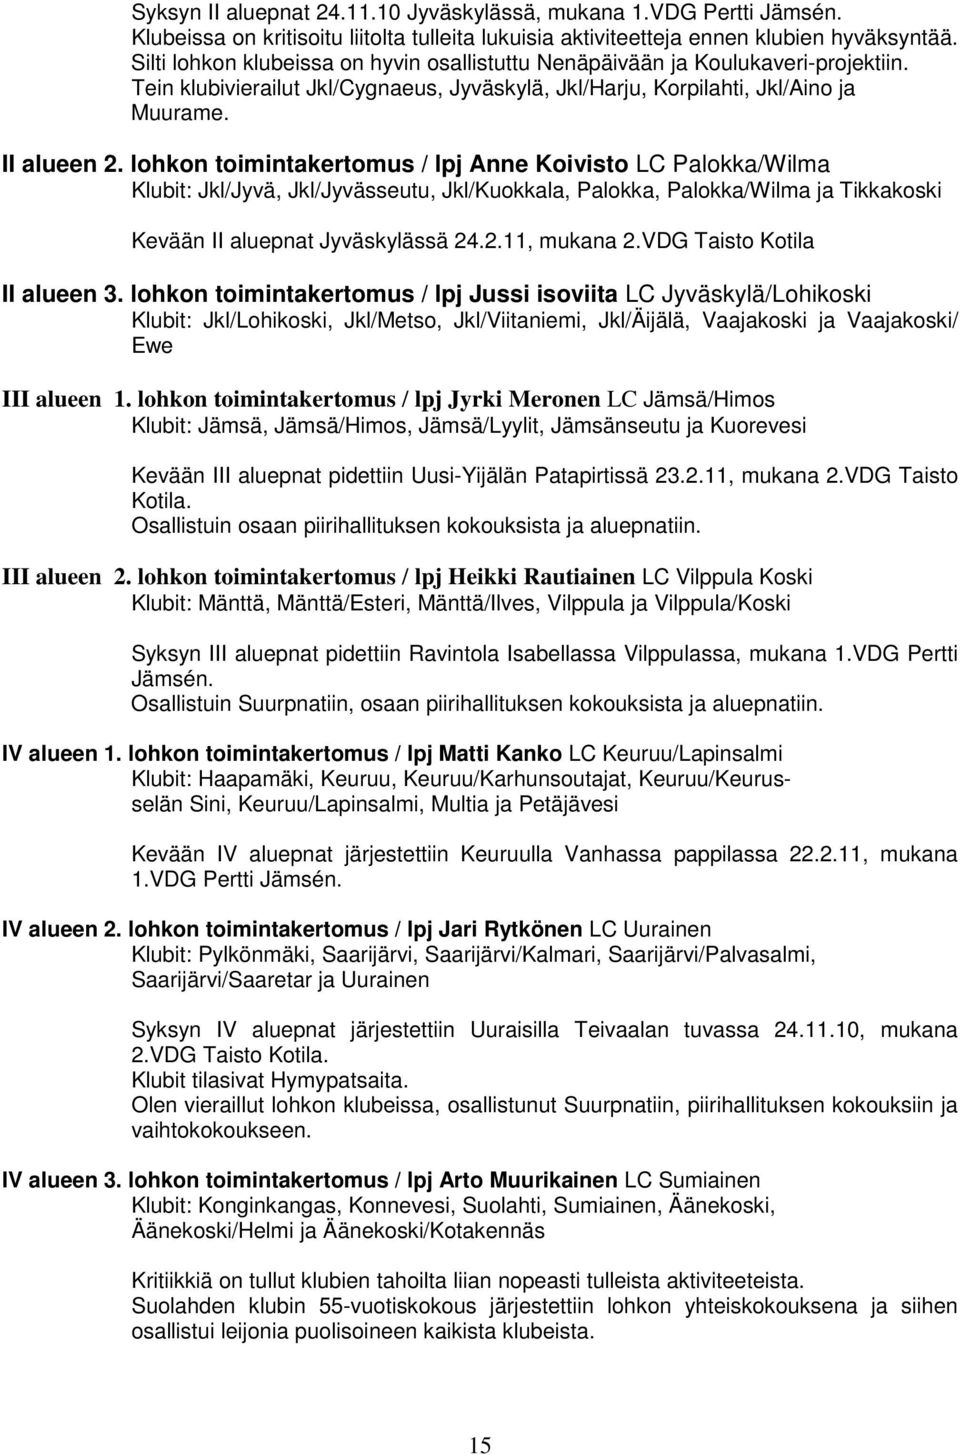 lohkon toimintakertomus / lpj Anne Koivisto LC Palokka/Wilma Klubit: Jkl/Jyvä, Jkl/Jyvässeutu, Jkl/Kuokkala, Palokka, Palokka/Wilma ja Tikkakoski Kevään II aluepnat Jyväskylässä 24.2.11, mukana 2.